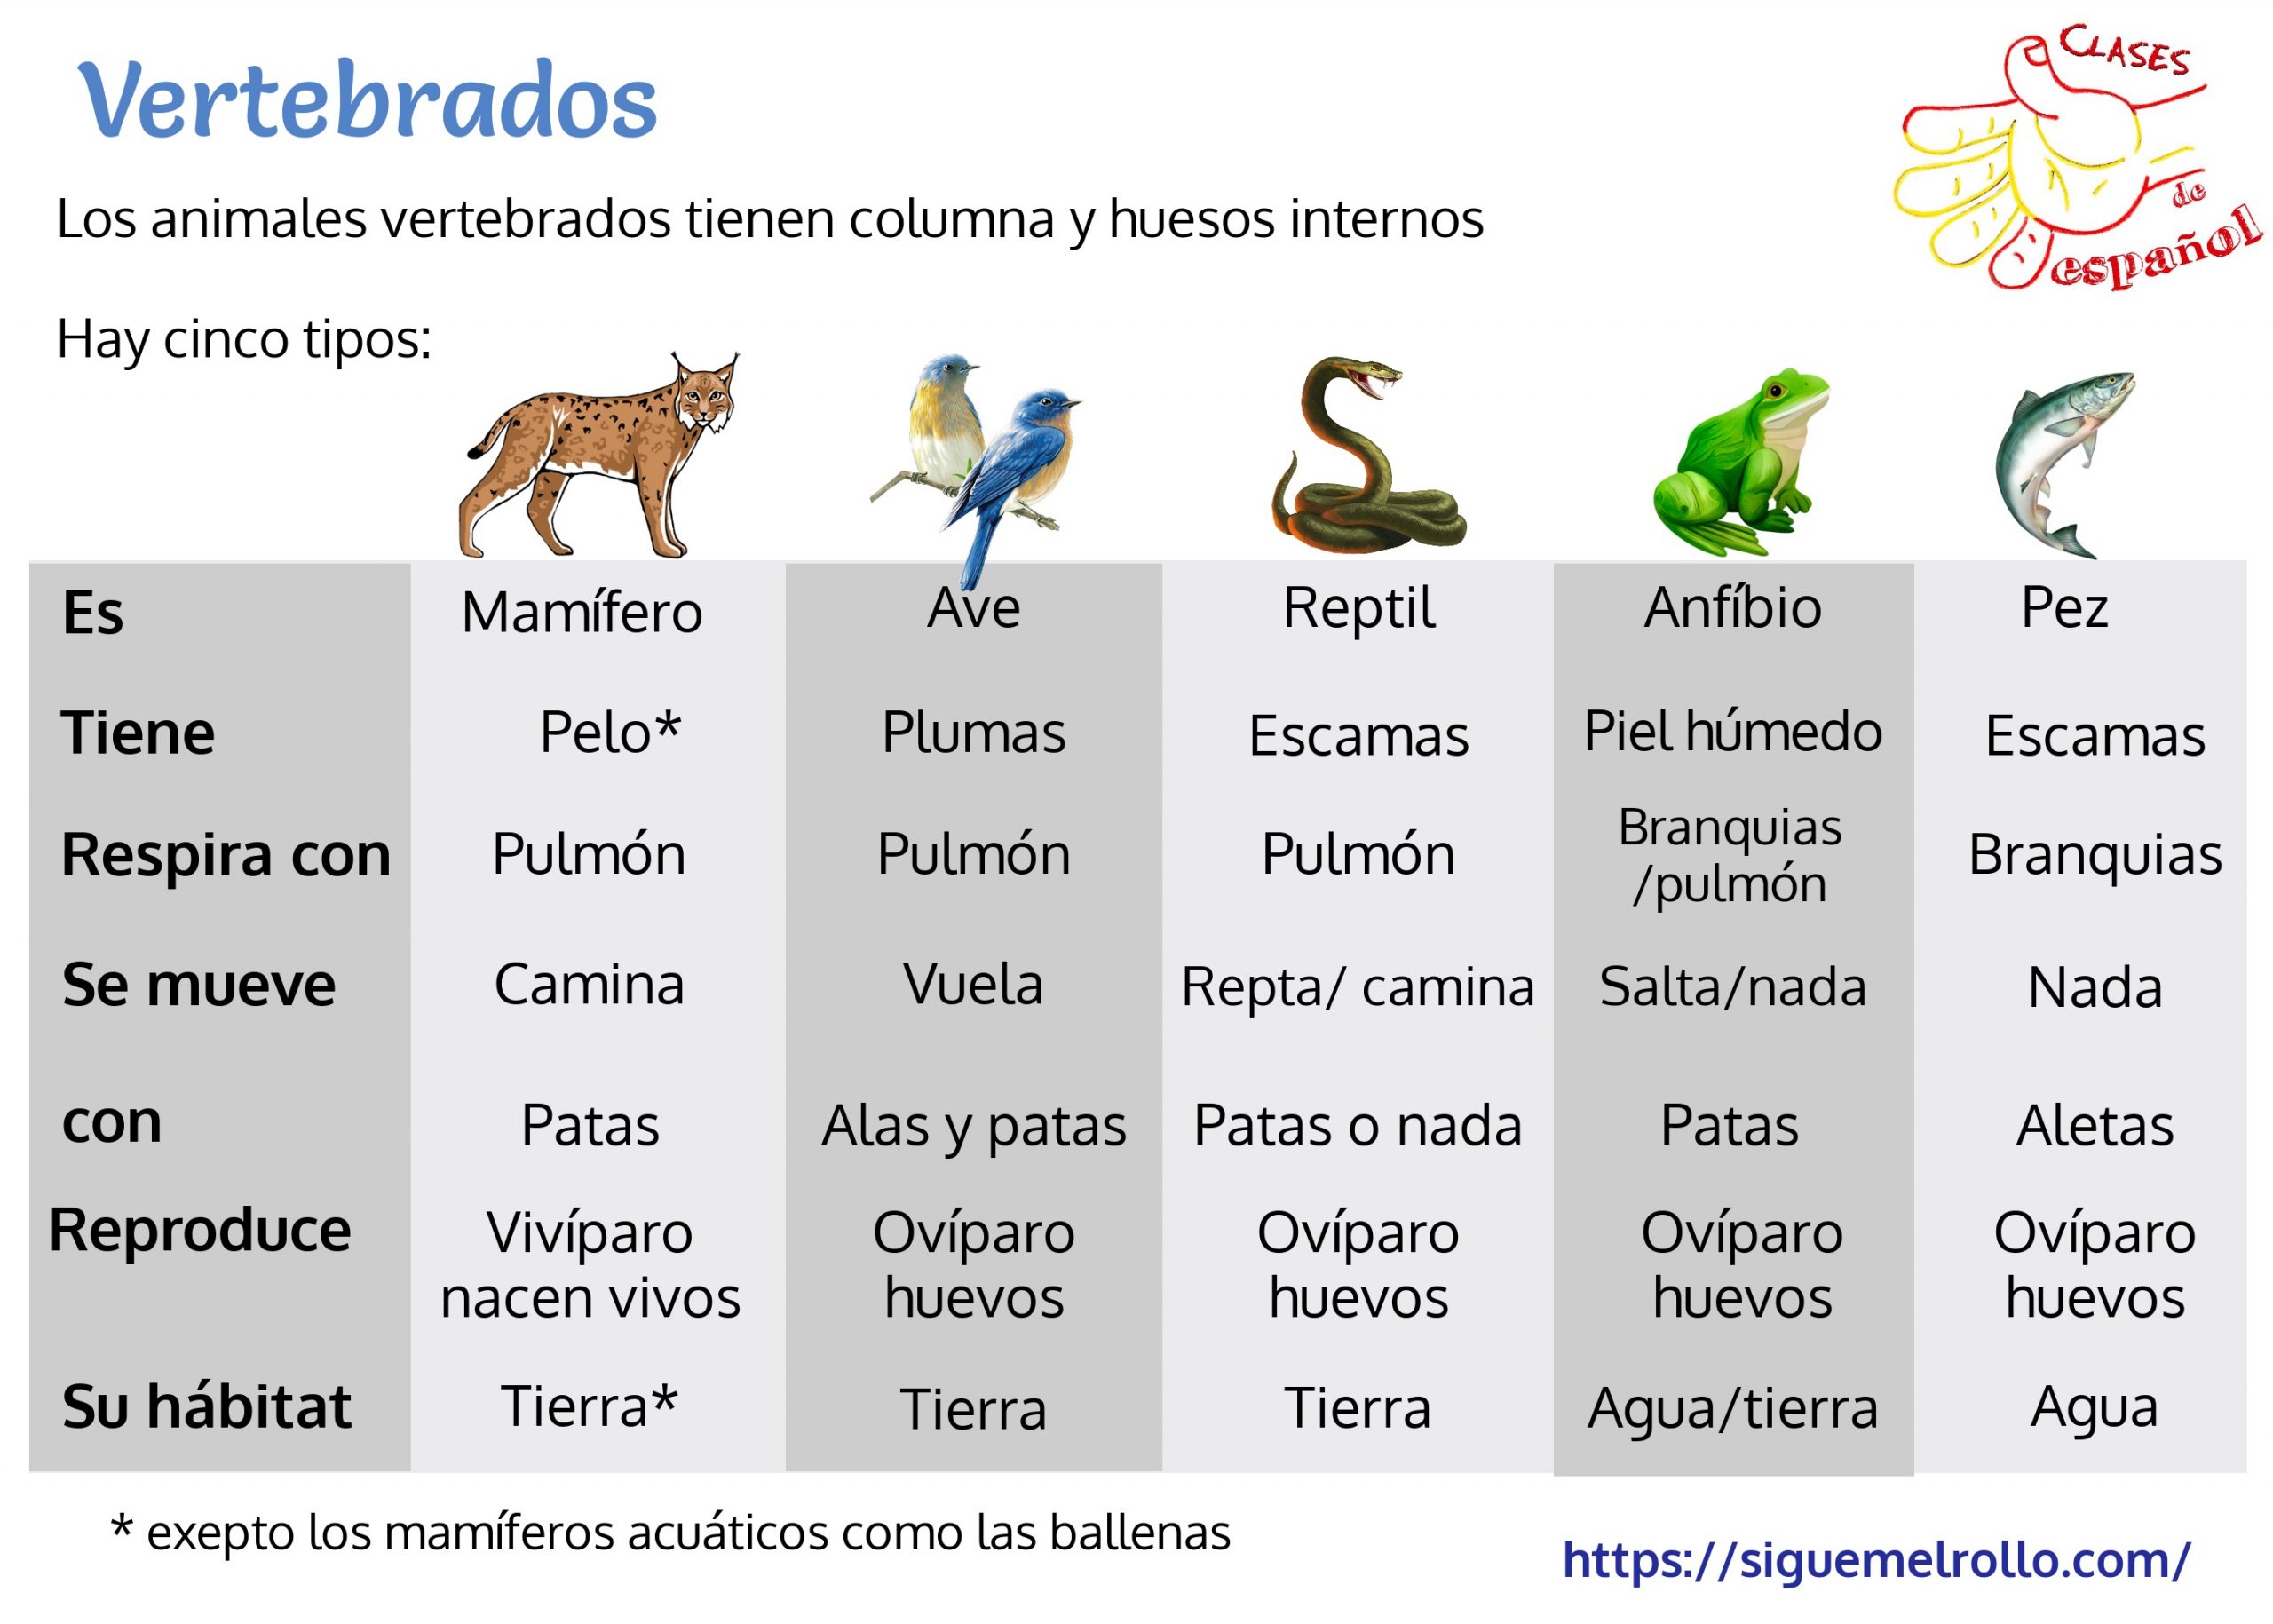 Características de los vertebrados